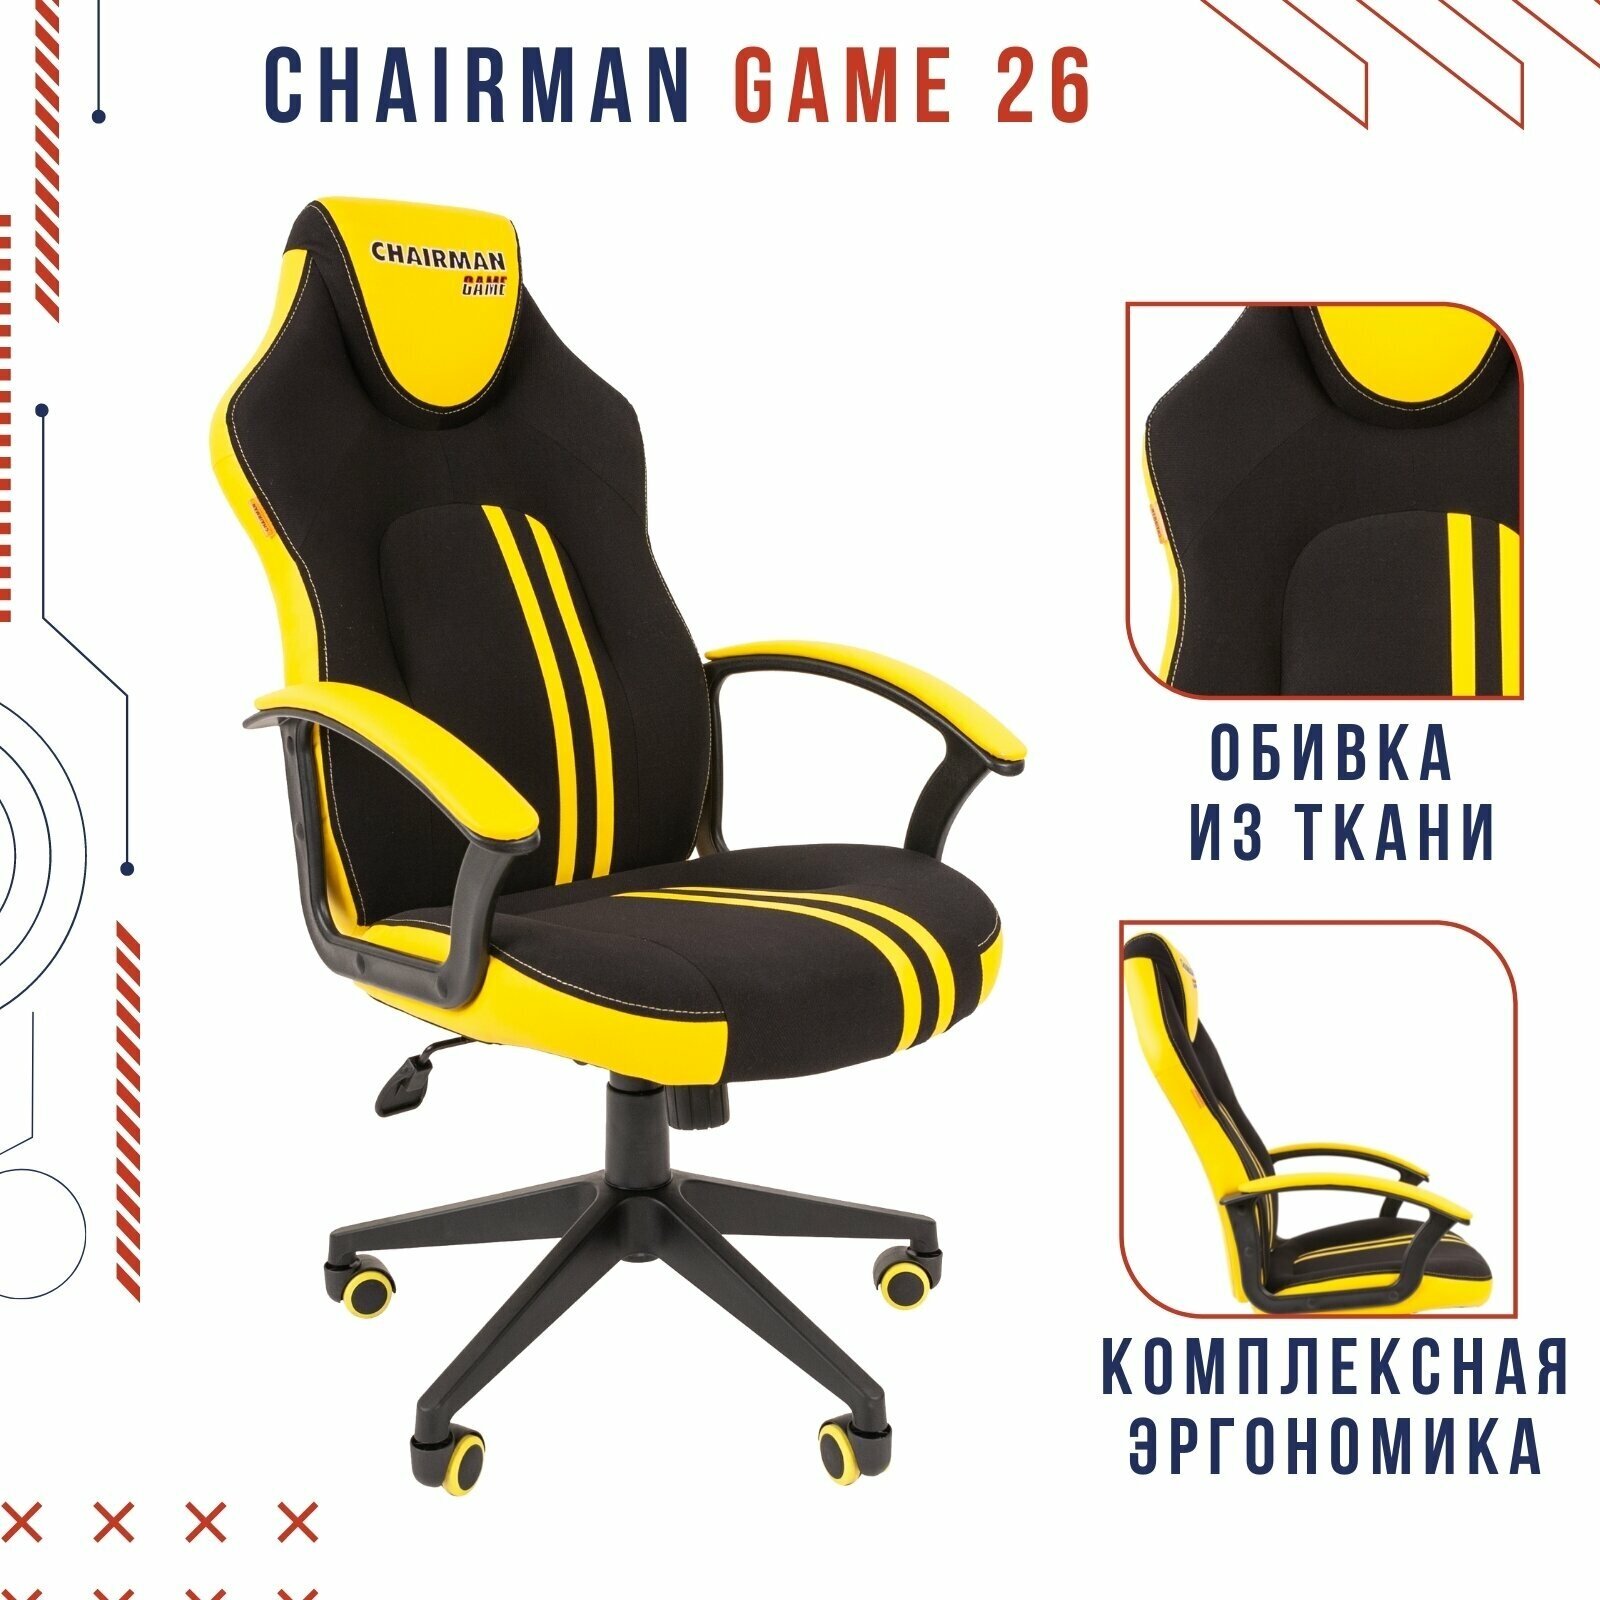 Компьютерное кресло Chairman game 26 черный/жёлтый (00-07053960)